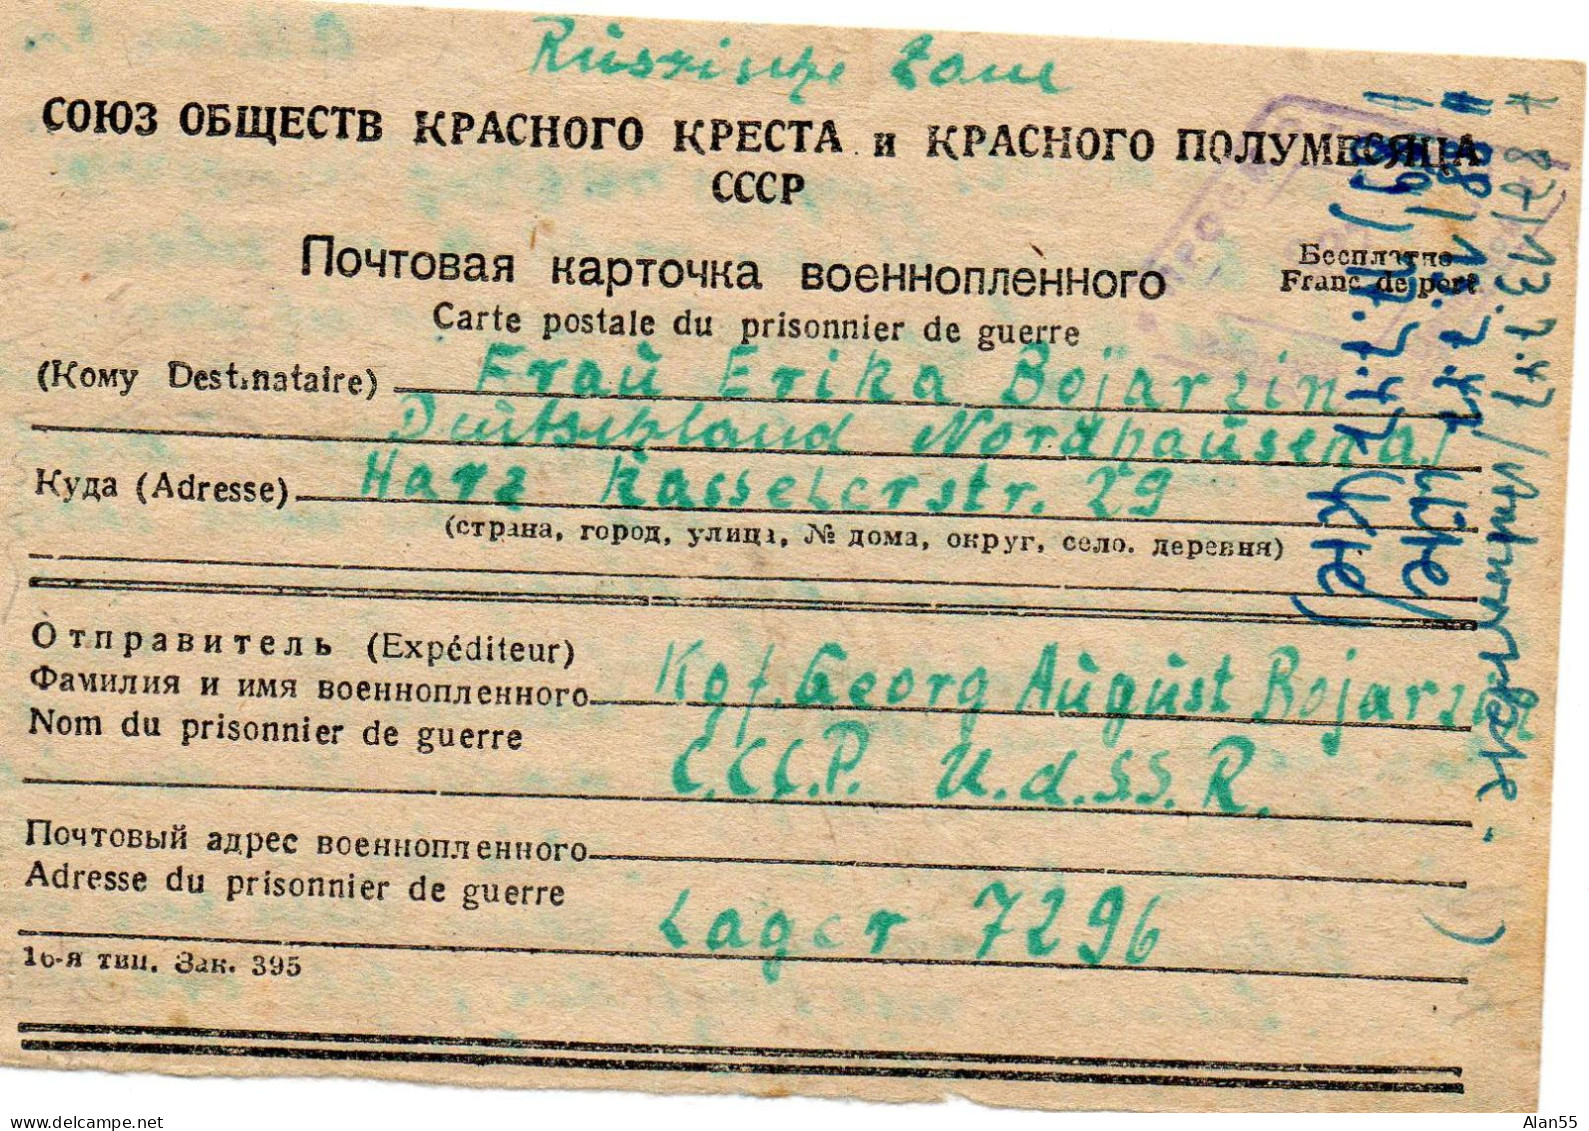 URSS. 1947.CARTE FAMILIALE. PRISONNIER GUERRE ALLEMAND. LAGER 7296. CENSURE. - Lettres & Documents